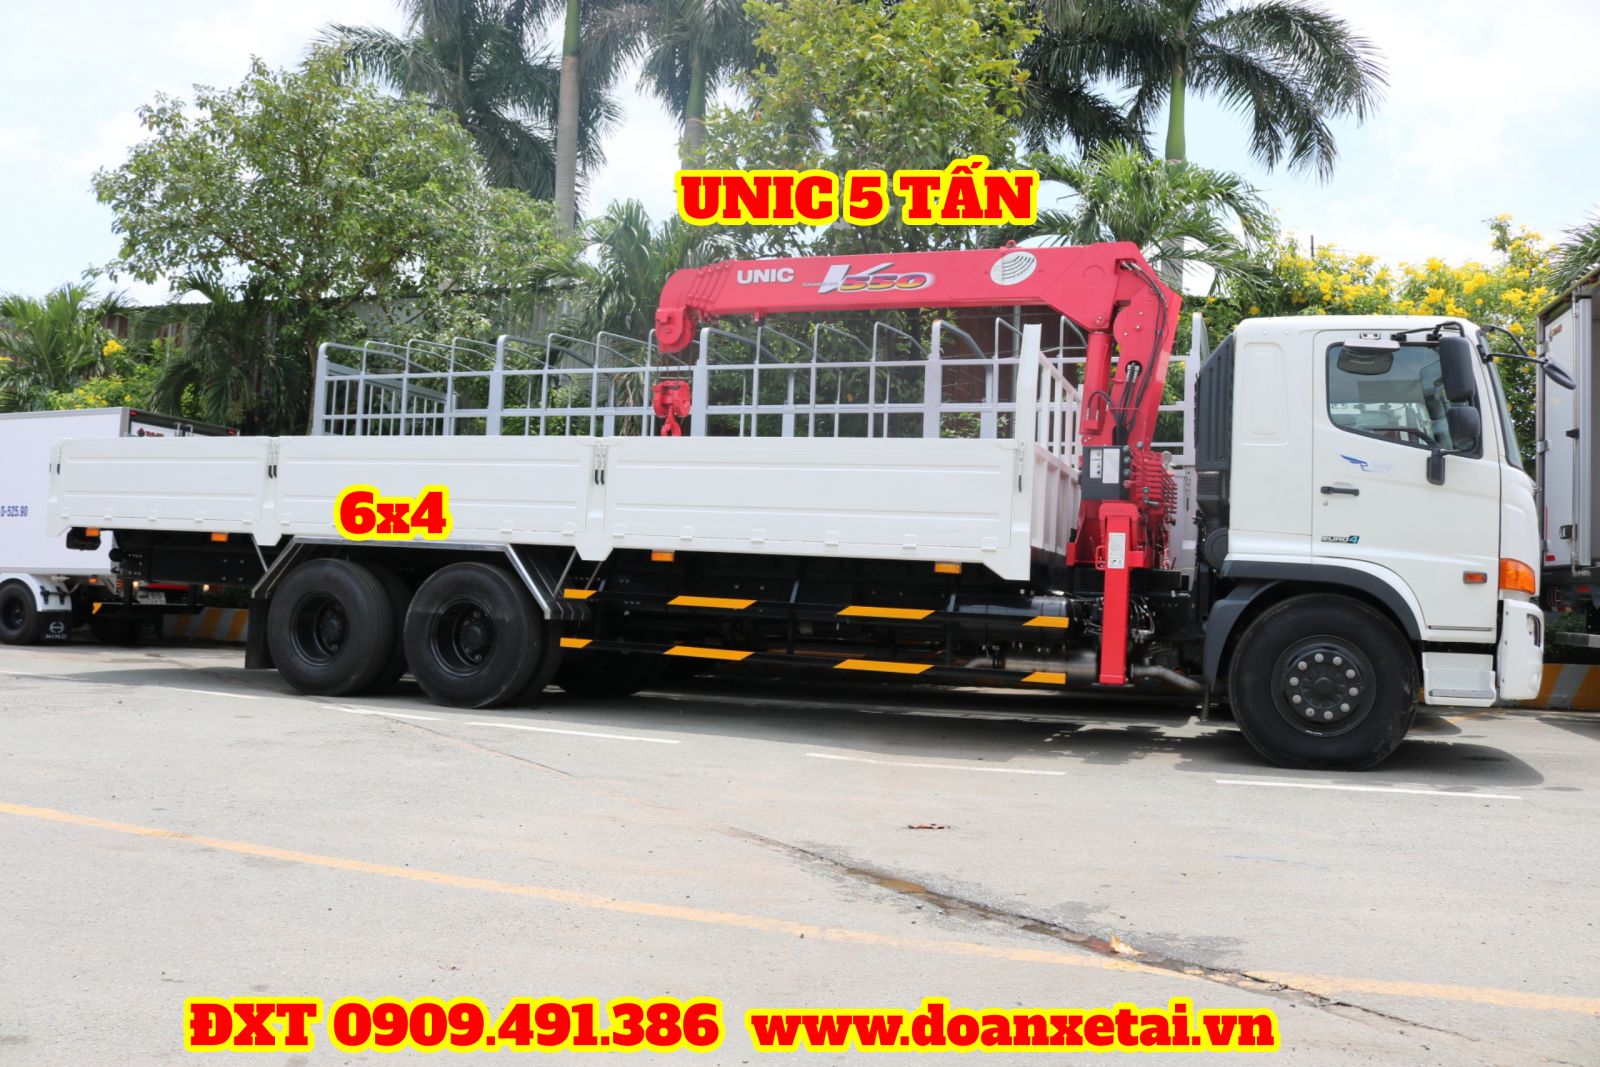 xe tải hino 15 tấn gắn cẩu unic 5 tấn được đóng thùng dài 8m5 tại Hino Đại Phát Tín